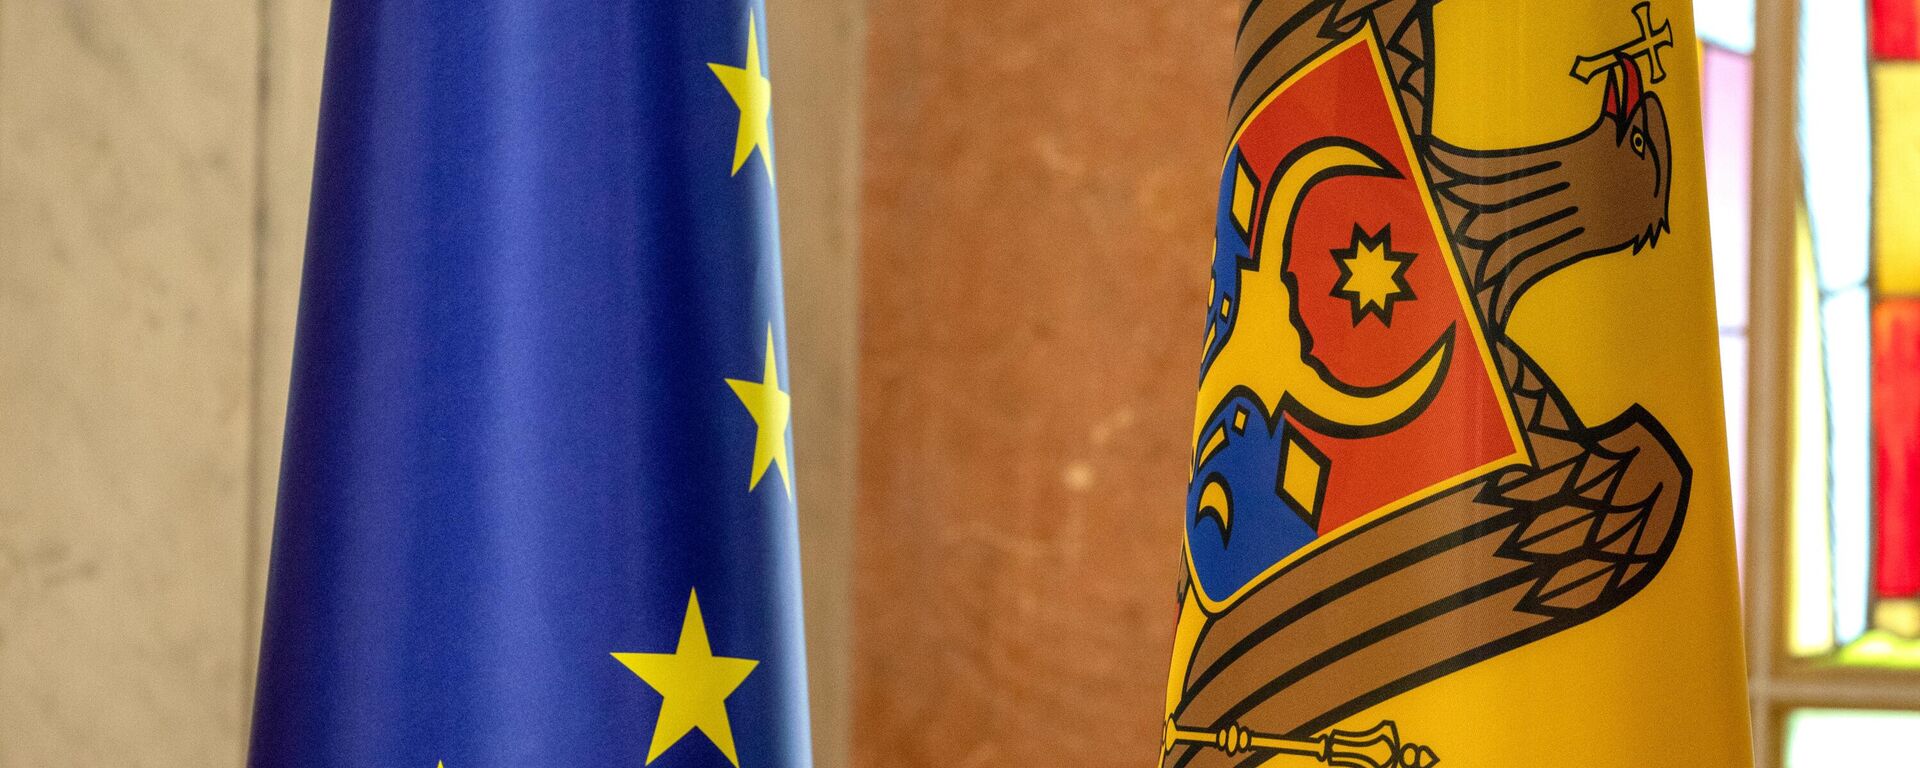 Bandeiras nacionais da Moldávia e da União Europeia em uma coletiva em Chisinau da presidente moldava Maia Sandu sobre a concessão à Moldávia do status de país candidato ao ingresso na União Europeia  - Sputnik Brasil, 1920, 27.06.2022